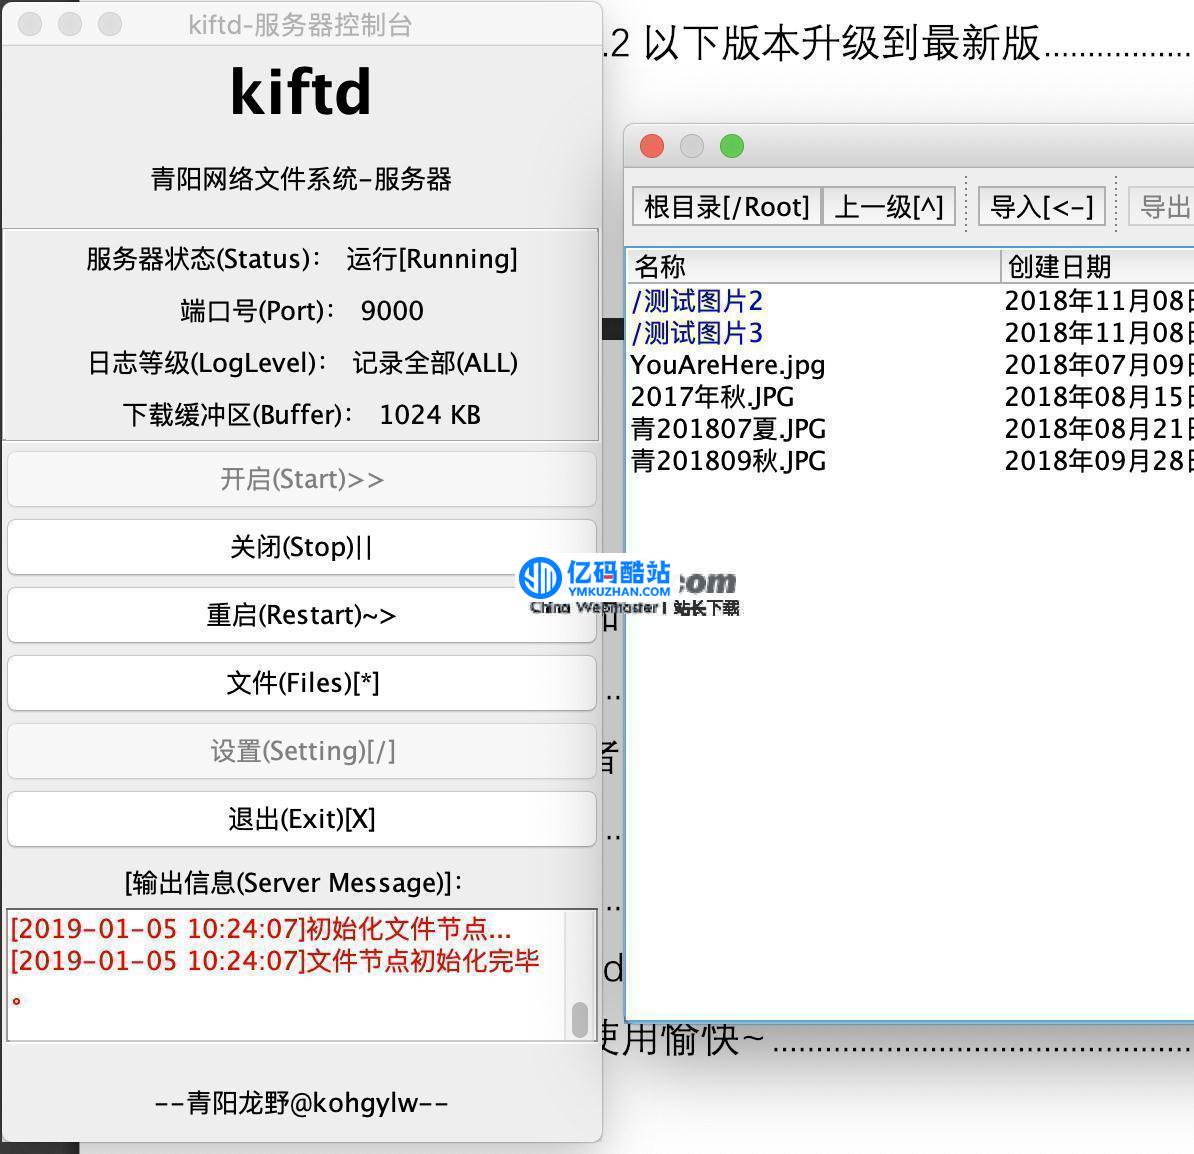 kiftd私人云盘搭建系统 v1.1.1插图4